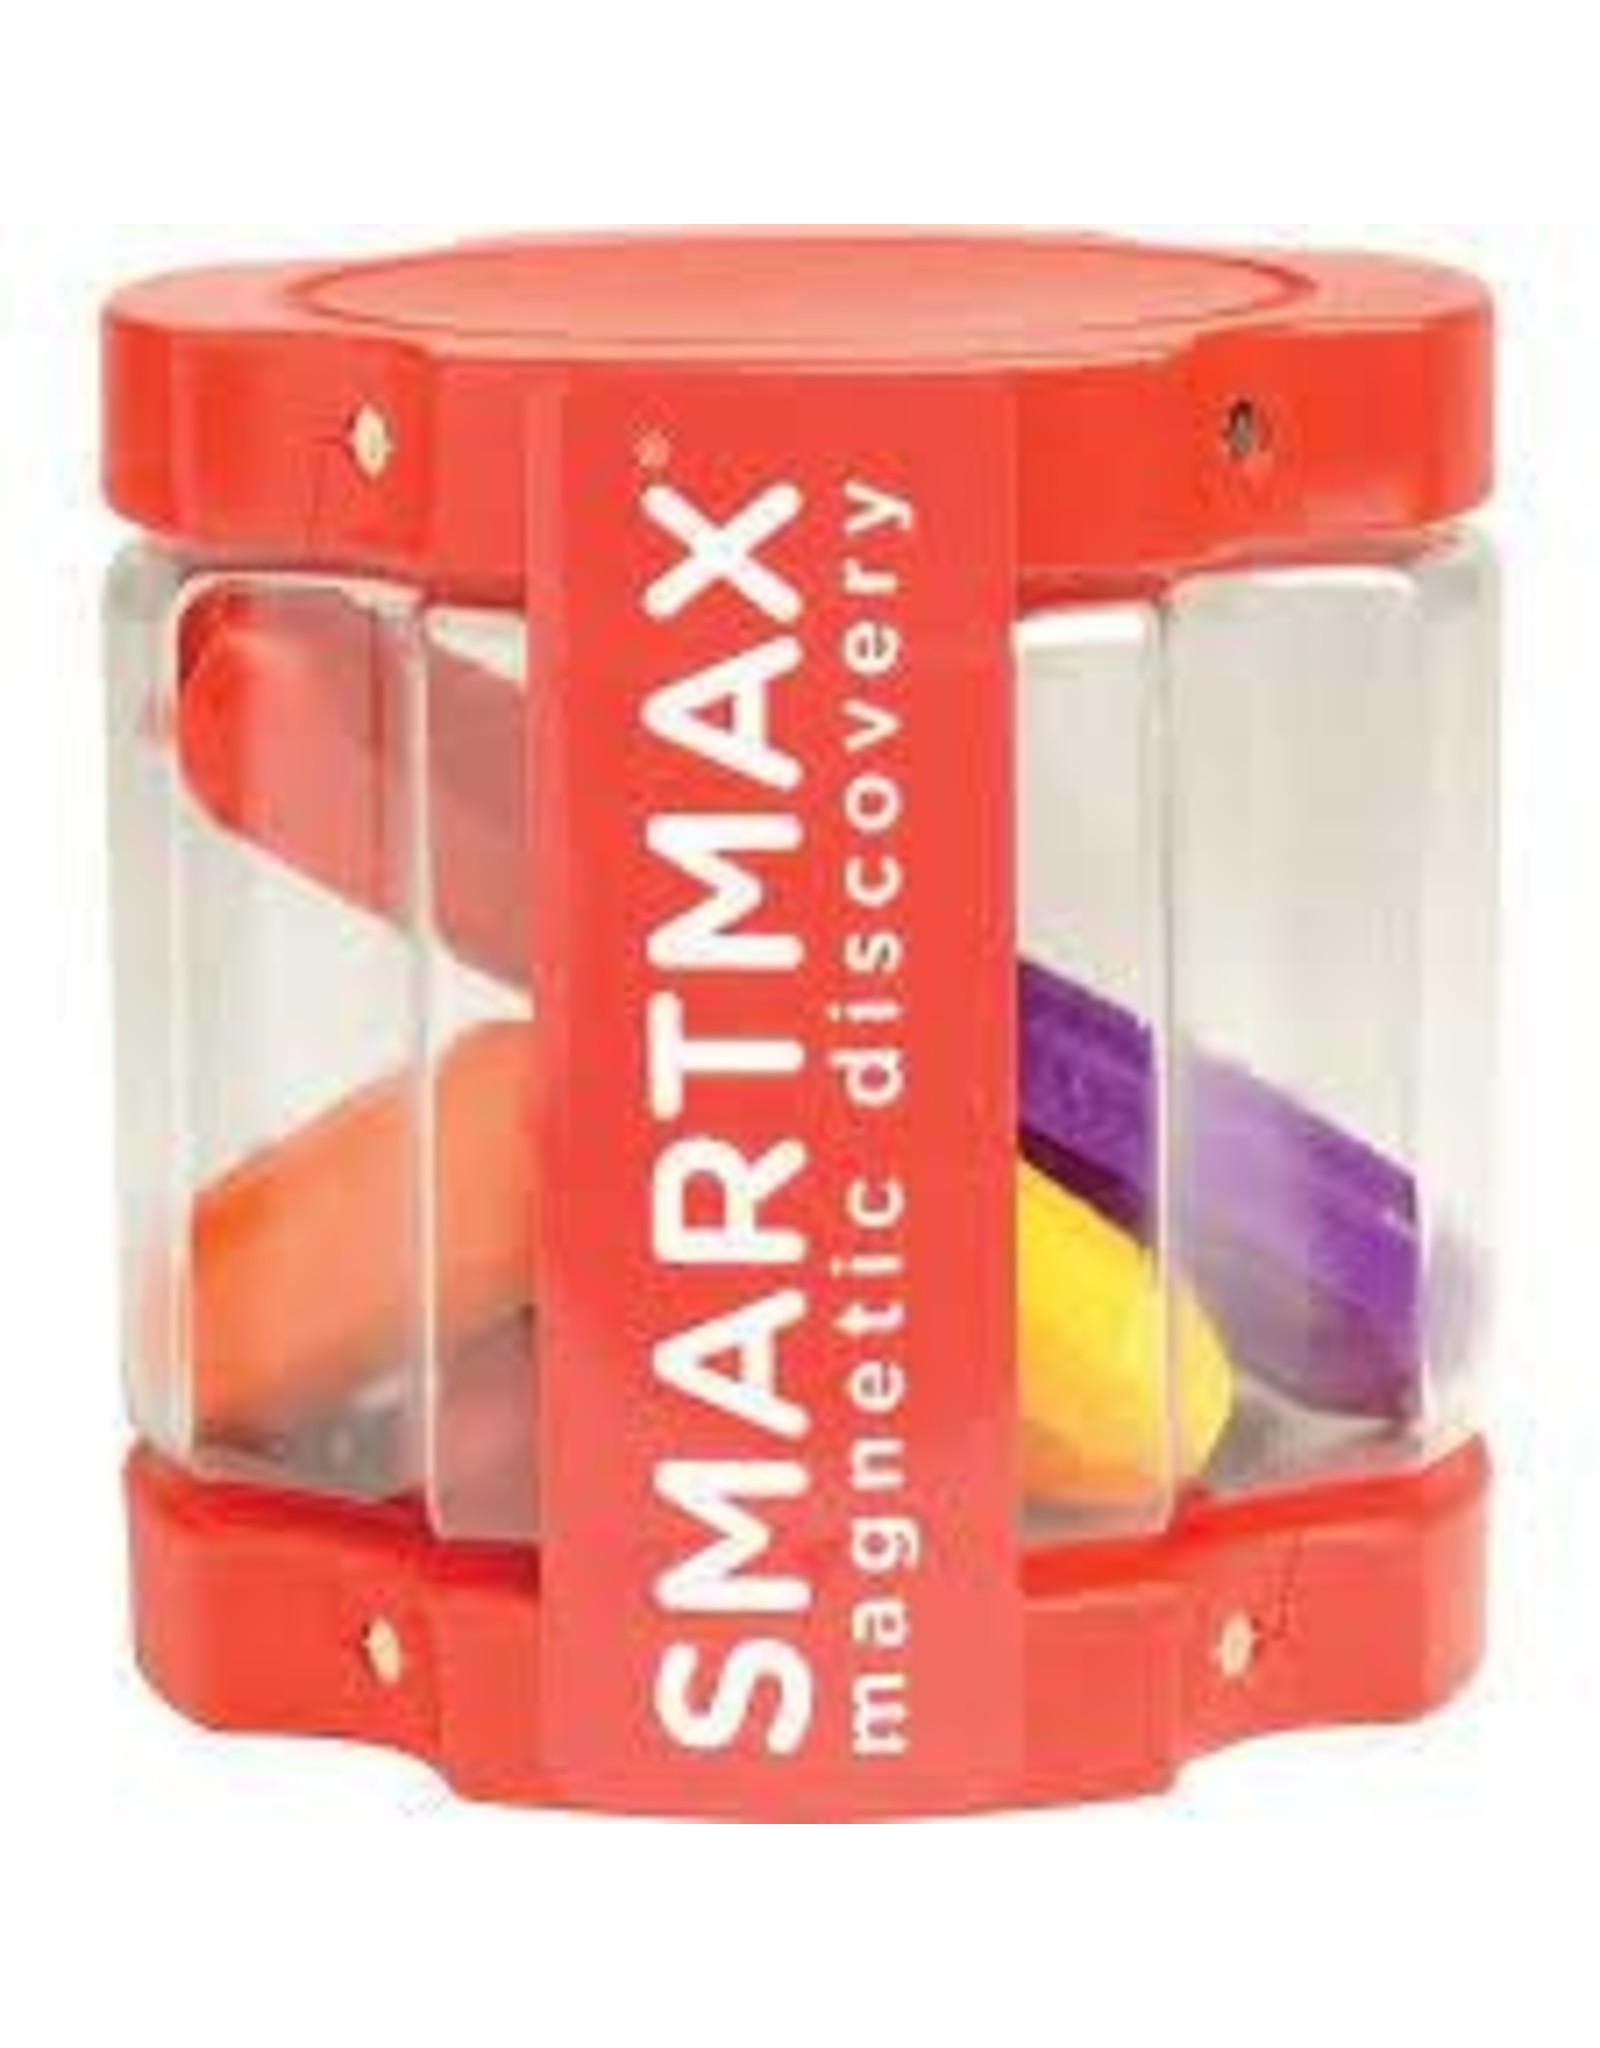 Smartmax SmartMax SMX 120 XT Set - 8 Medium Bars in Transparent Container